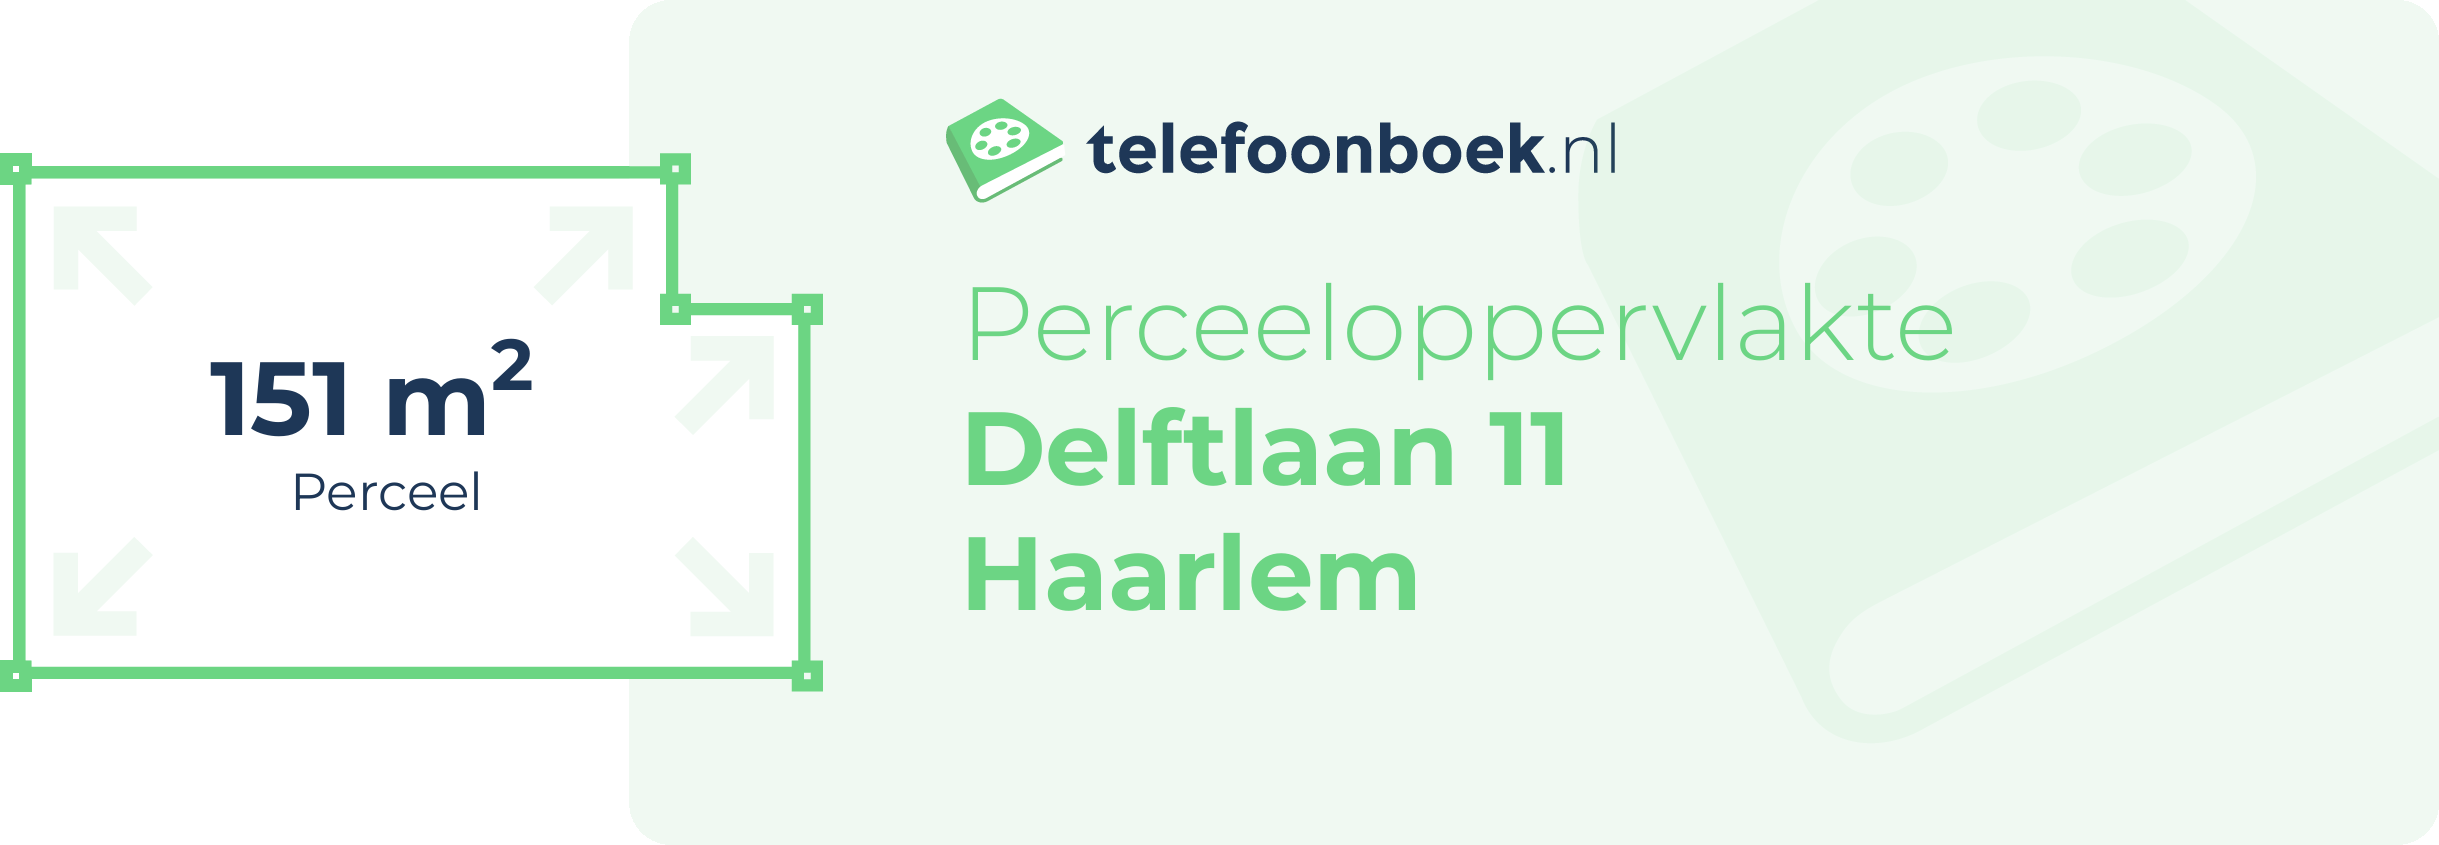 Perceeloppervlakte Delftlaan 11 Haarlem